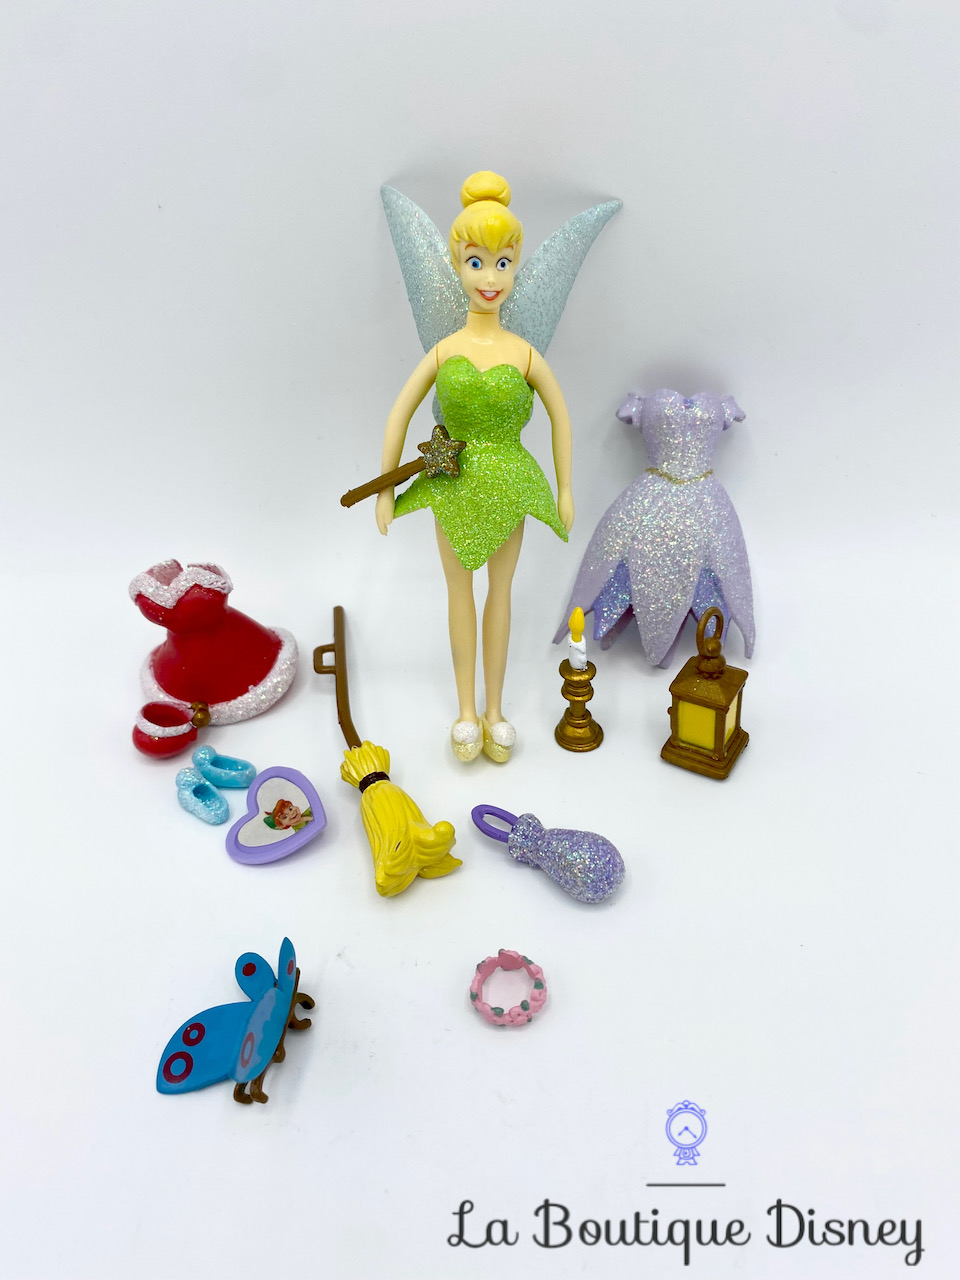 Coffret 3 figurines princesses Disney Bullyland - la fée du jouet